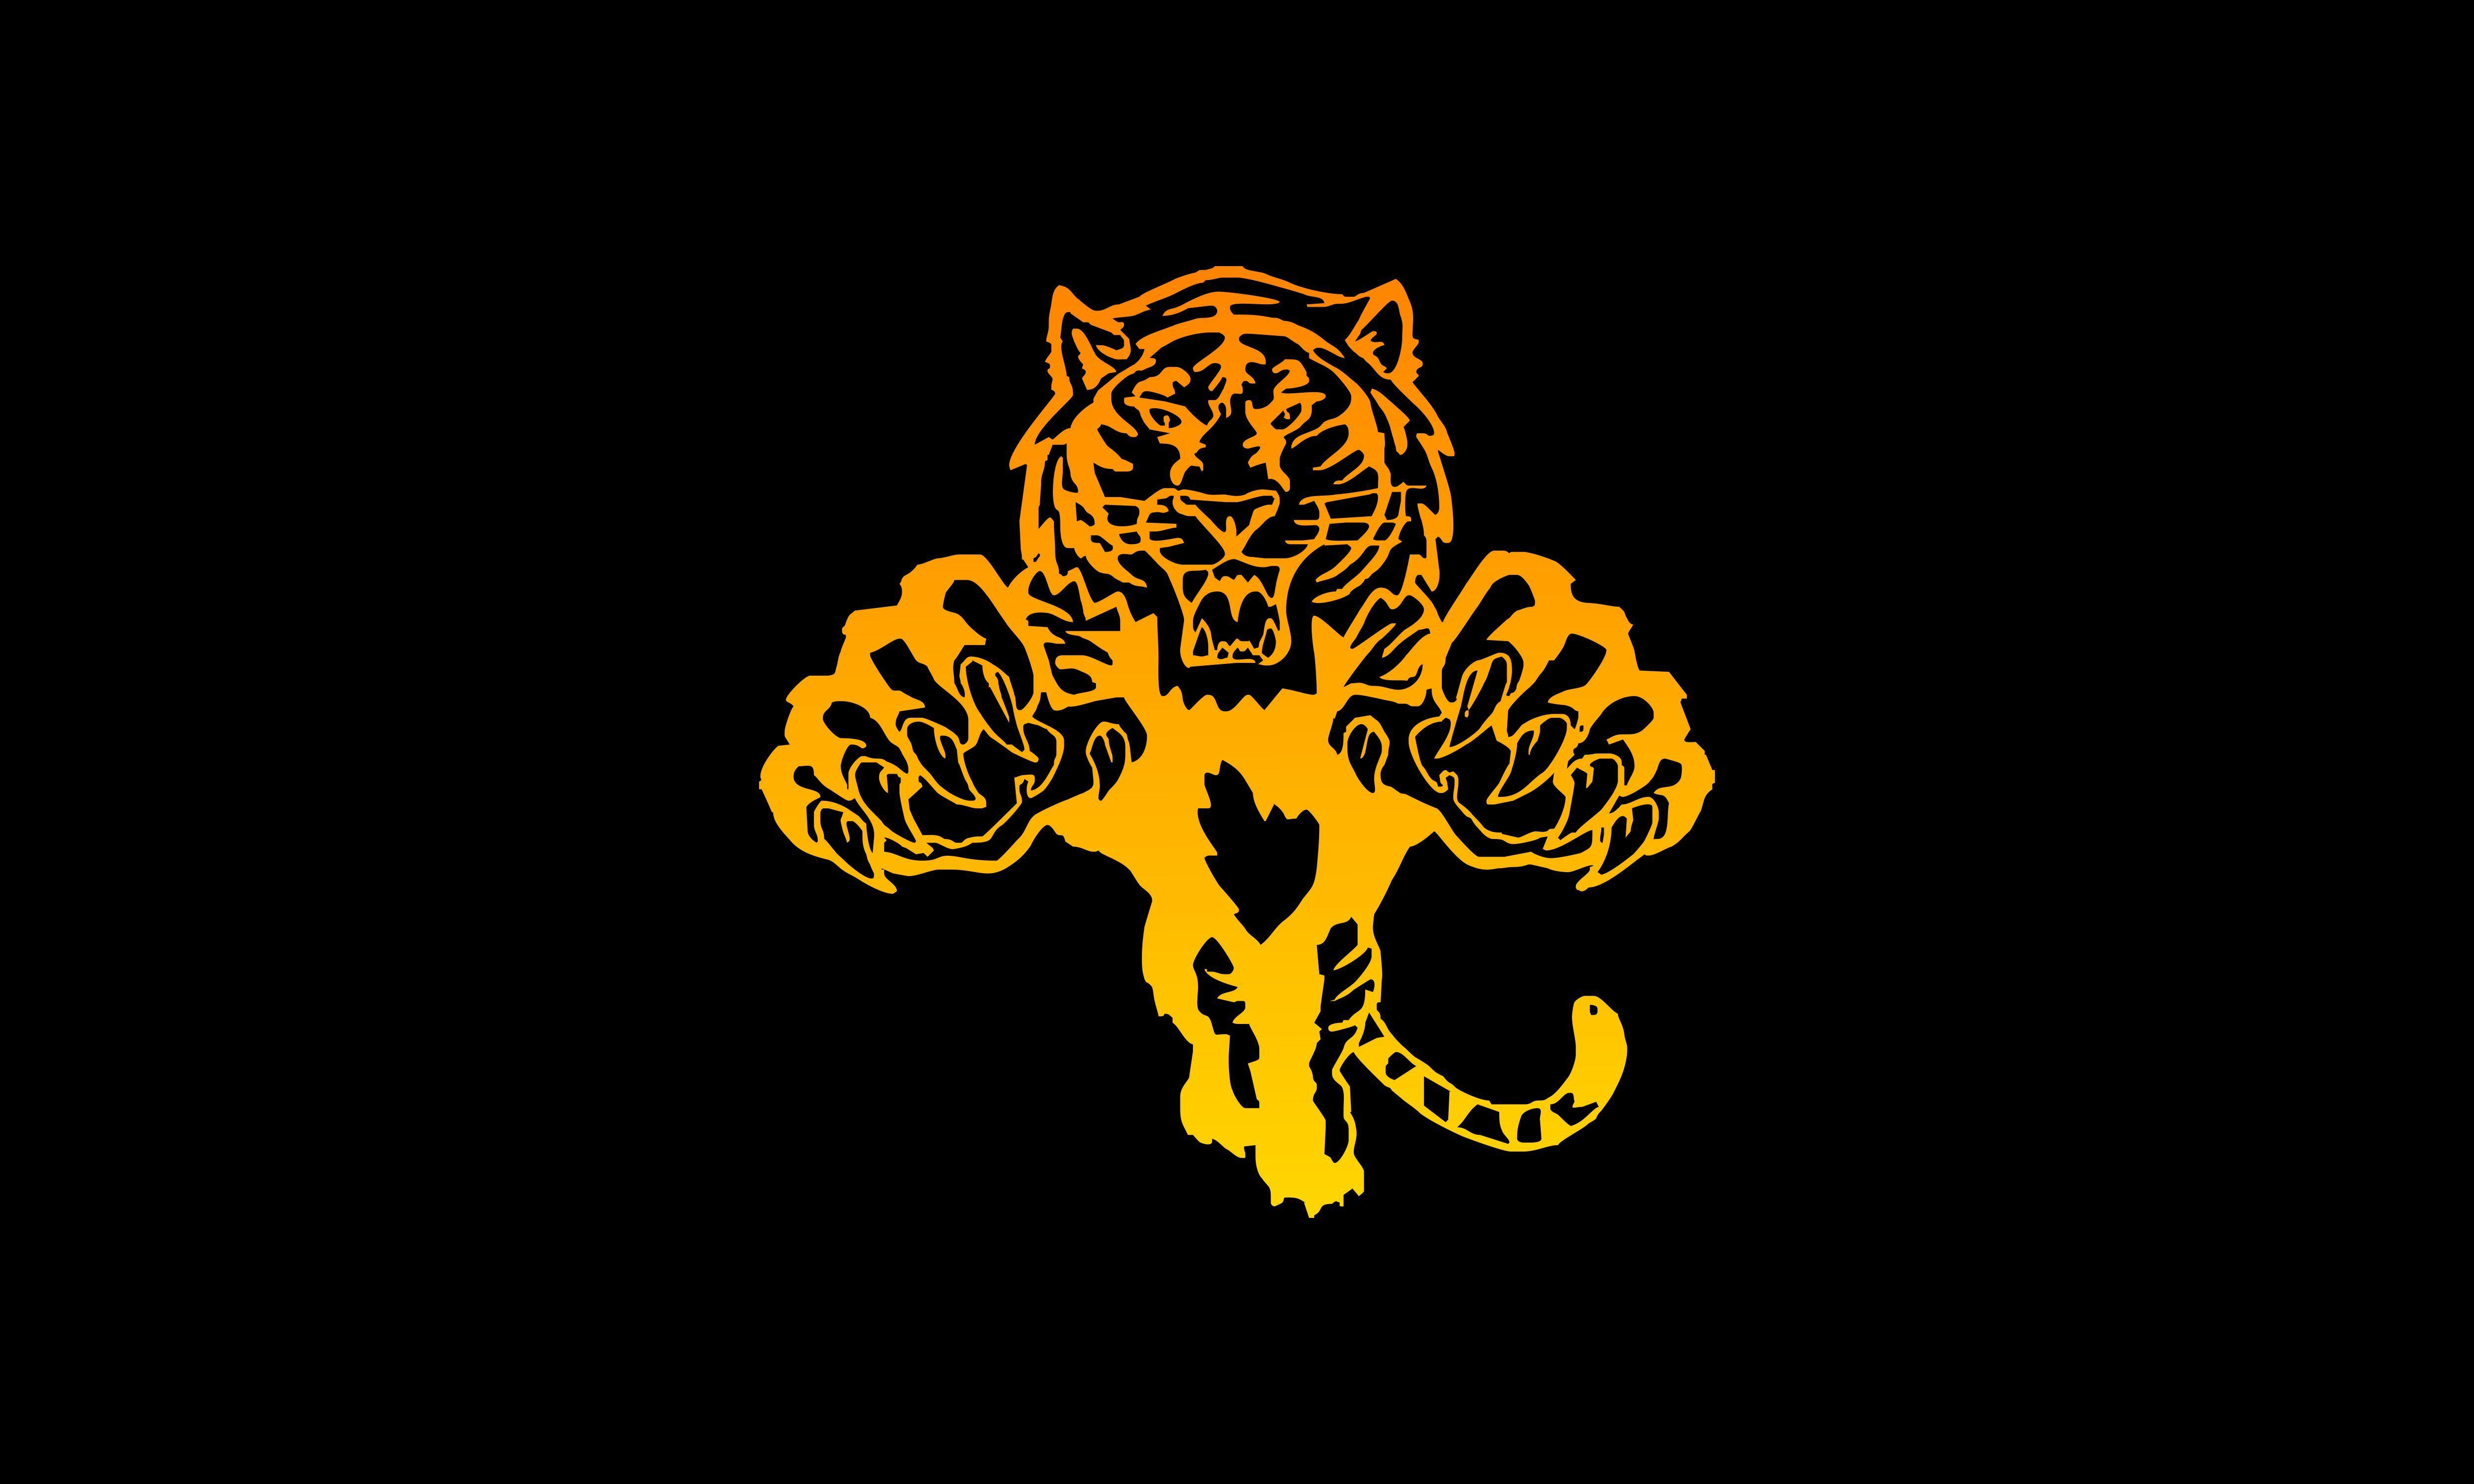 Roar Logo - Lion Roar Logo Vector Graphic